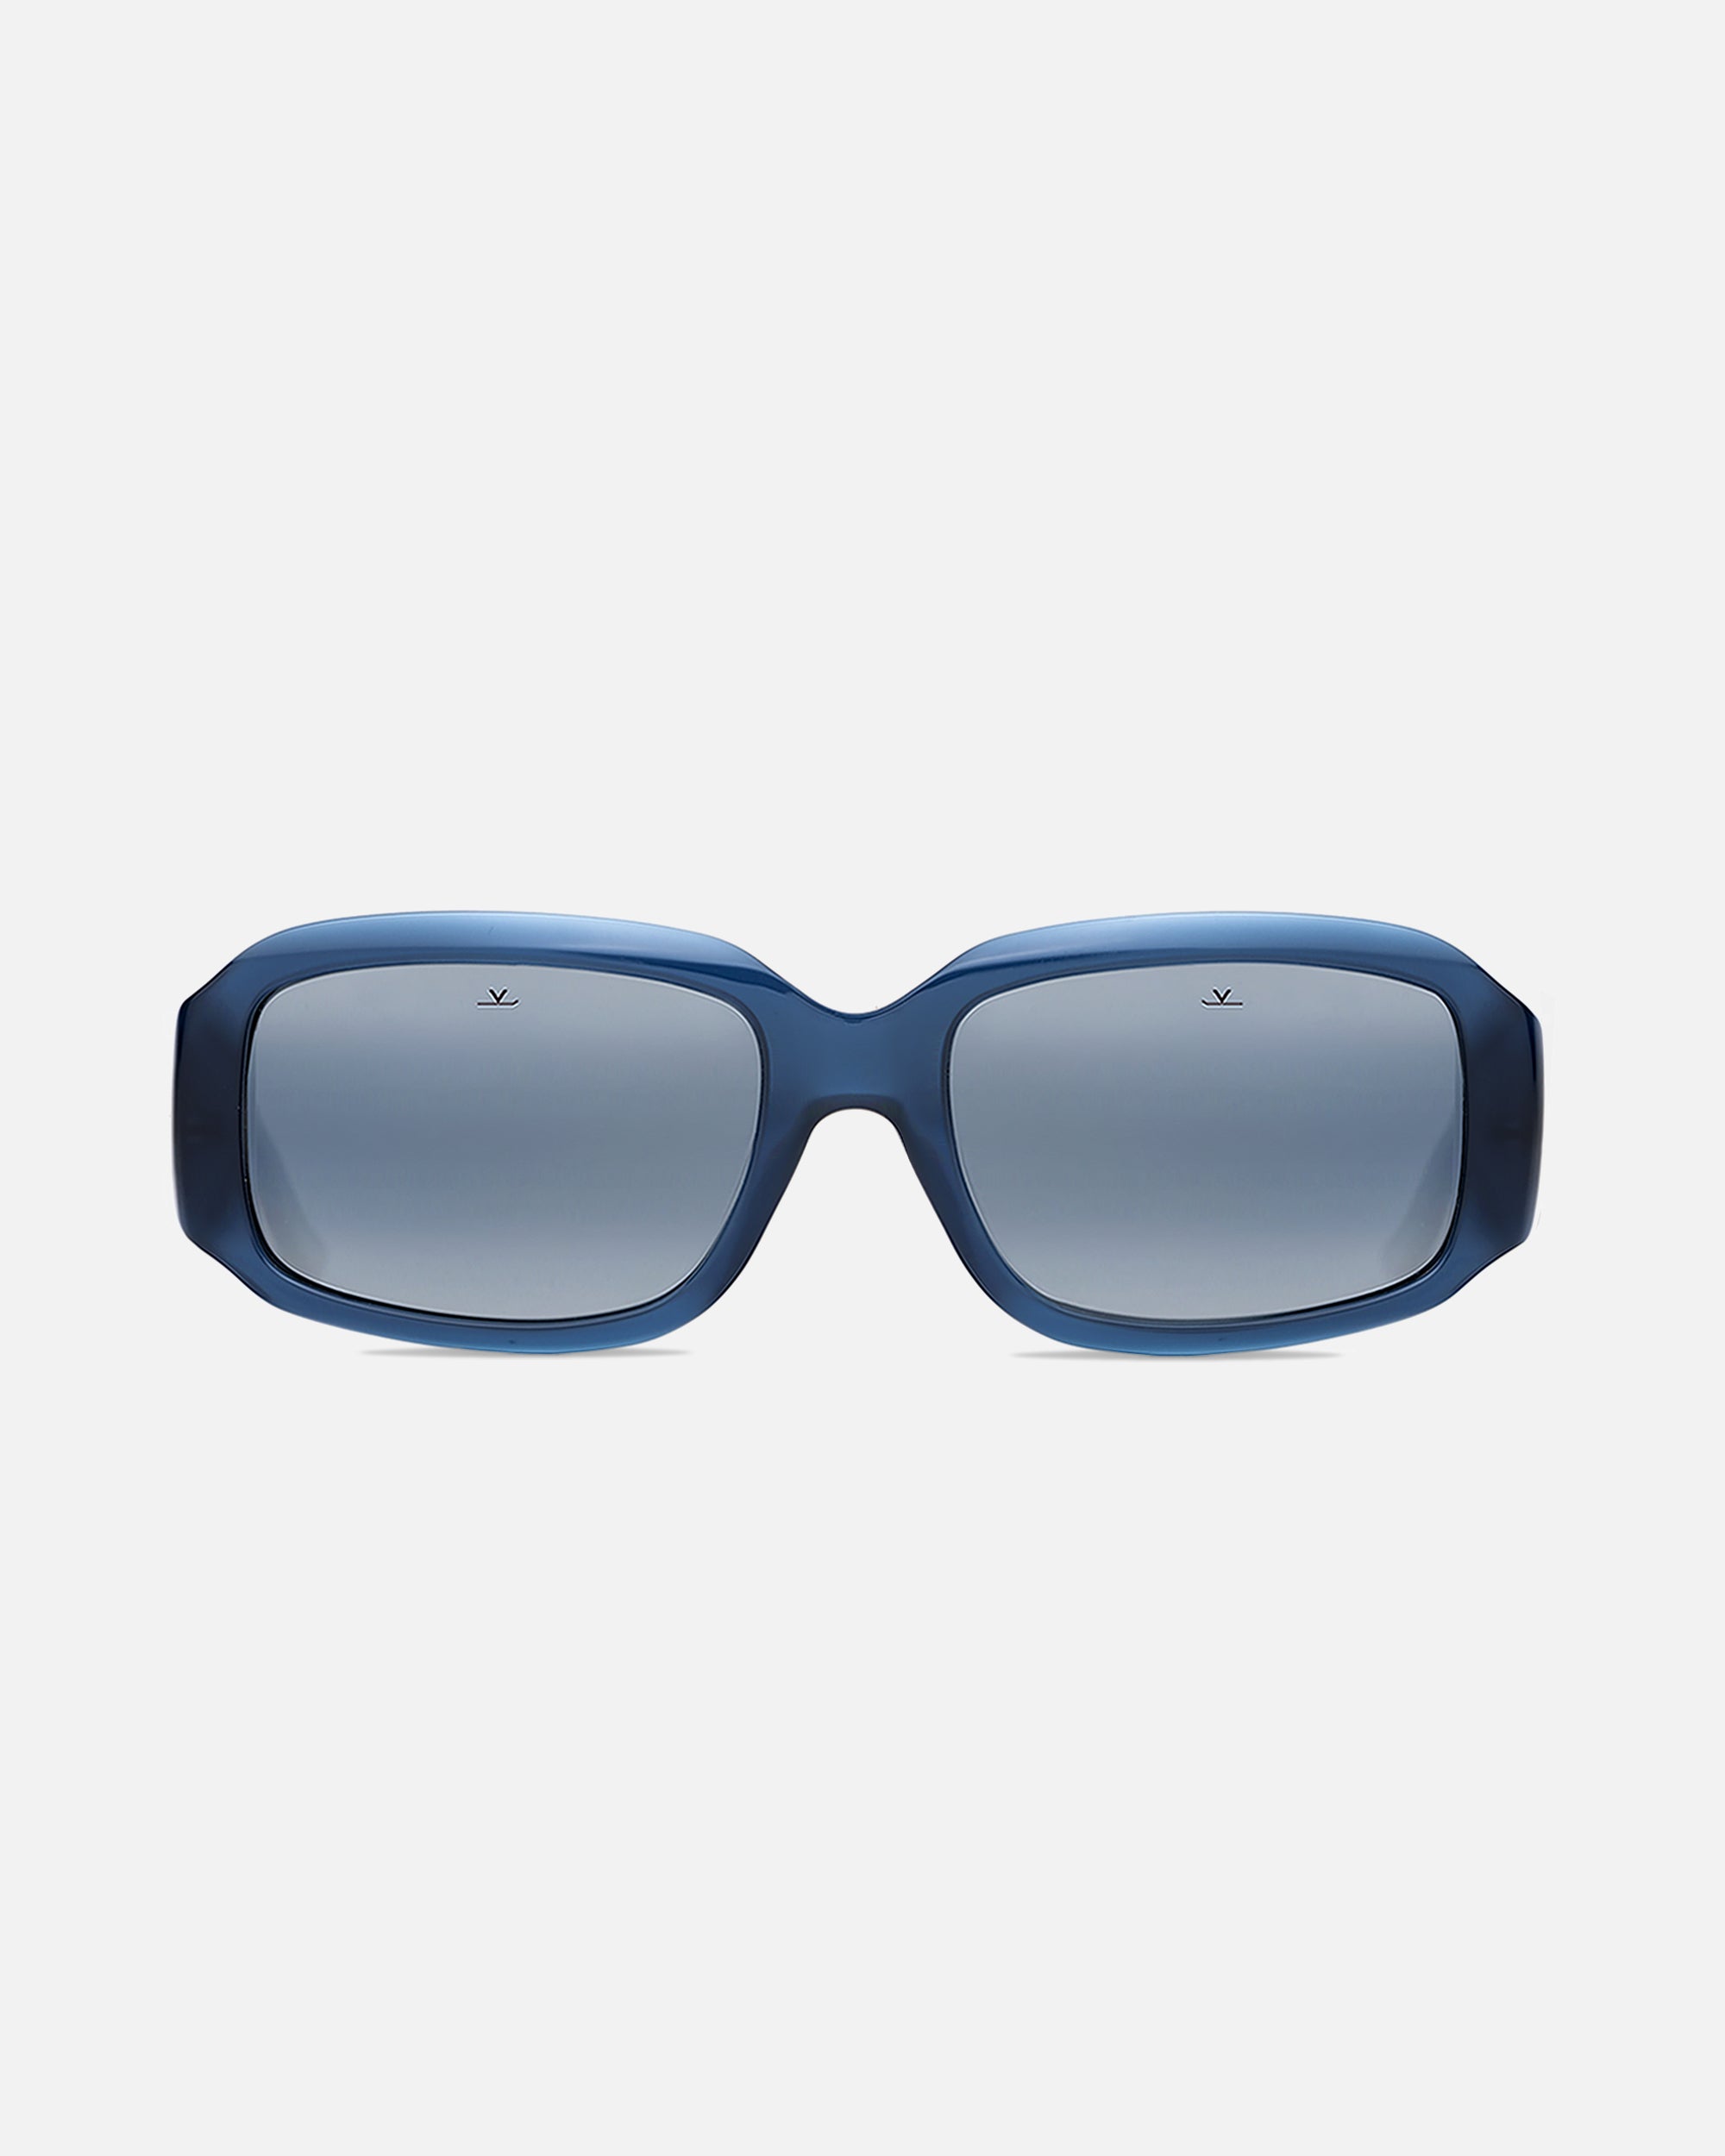 LV Edge Square Sunglasses S00 - Accessories